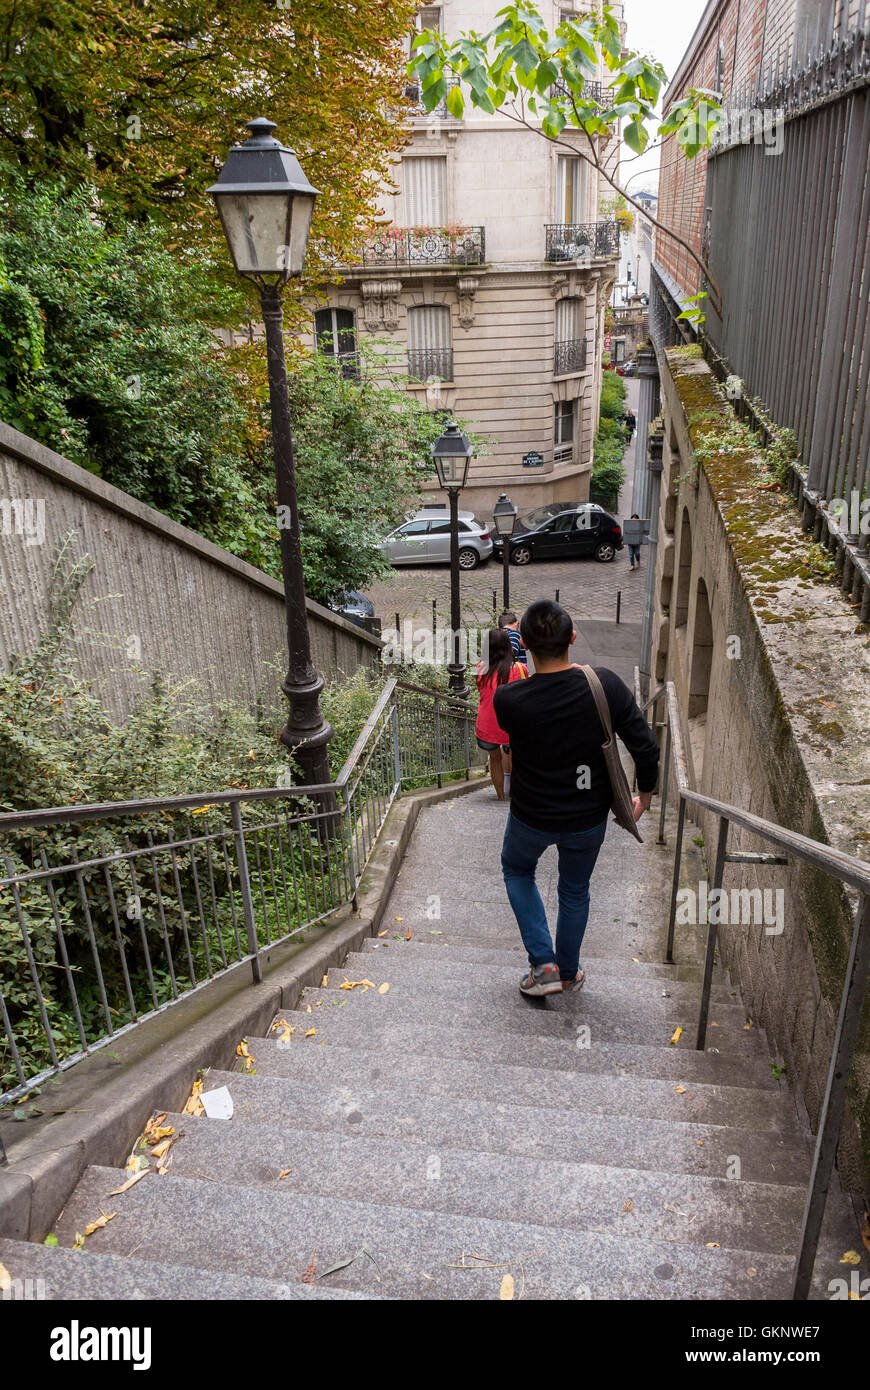 Paris, France, scènes de rue, été, touristes chinois marchant dans les escaliers, quartiers locaux, rue historique de Paris Banque D'Images